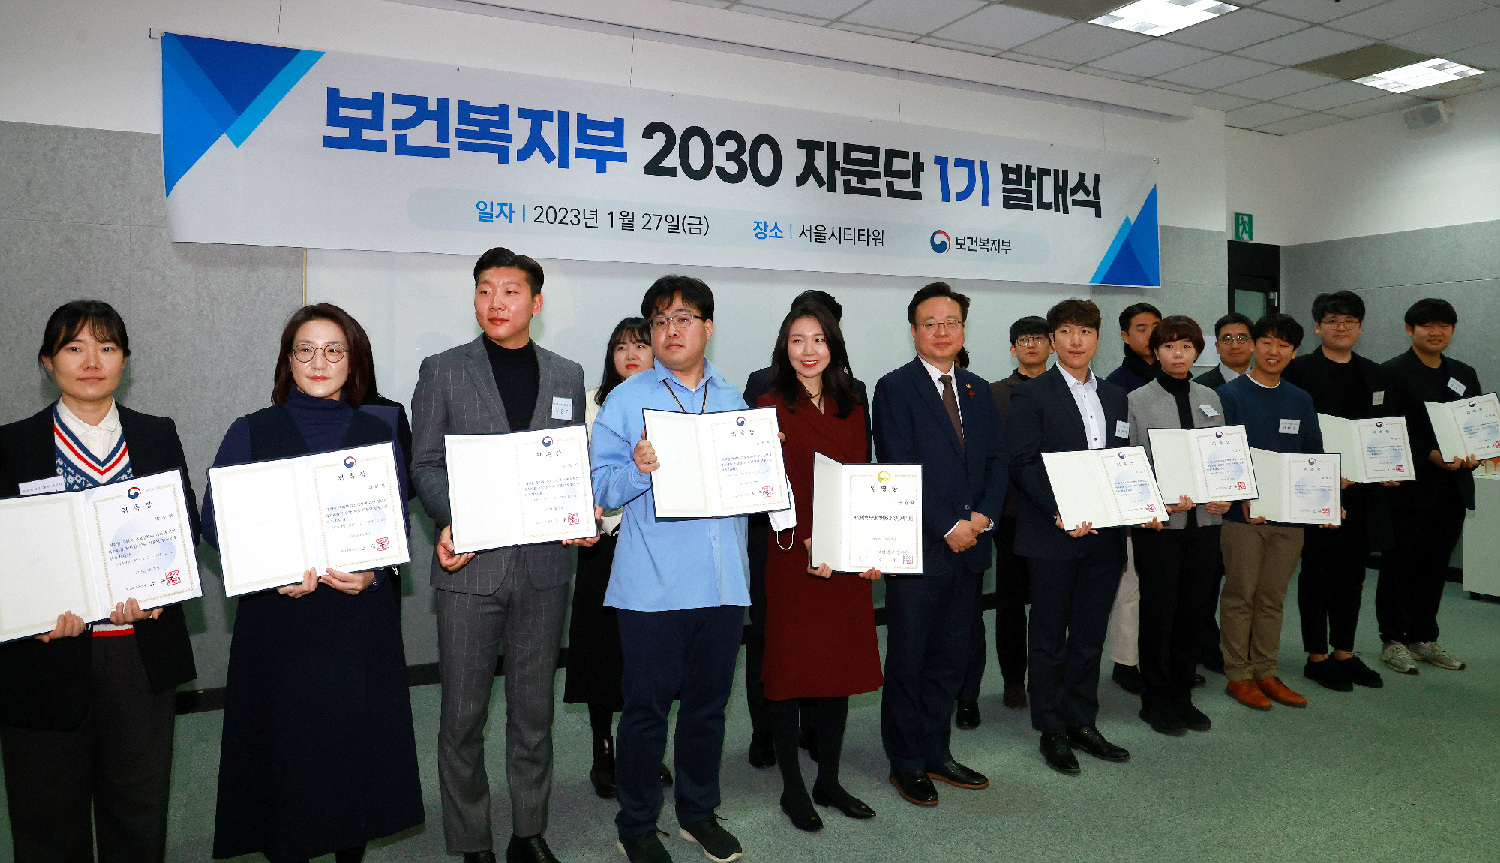 제1기 보건복지부 2030 자문단 발대식 개최 사진15